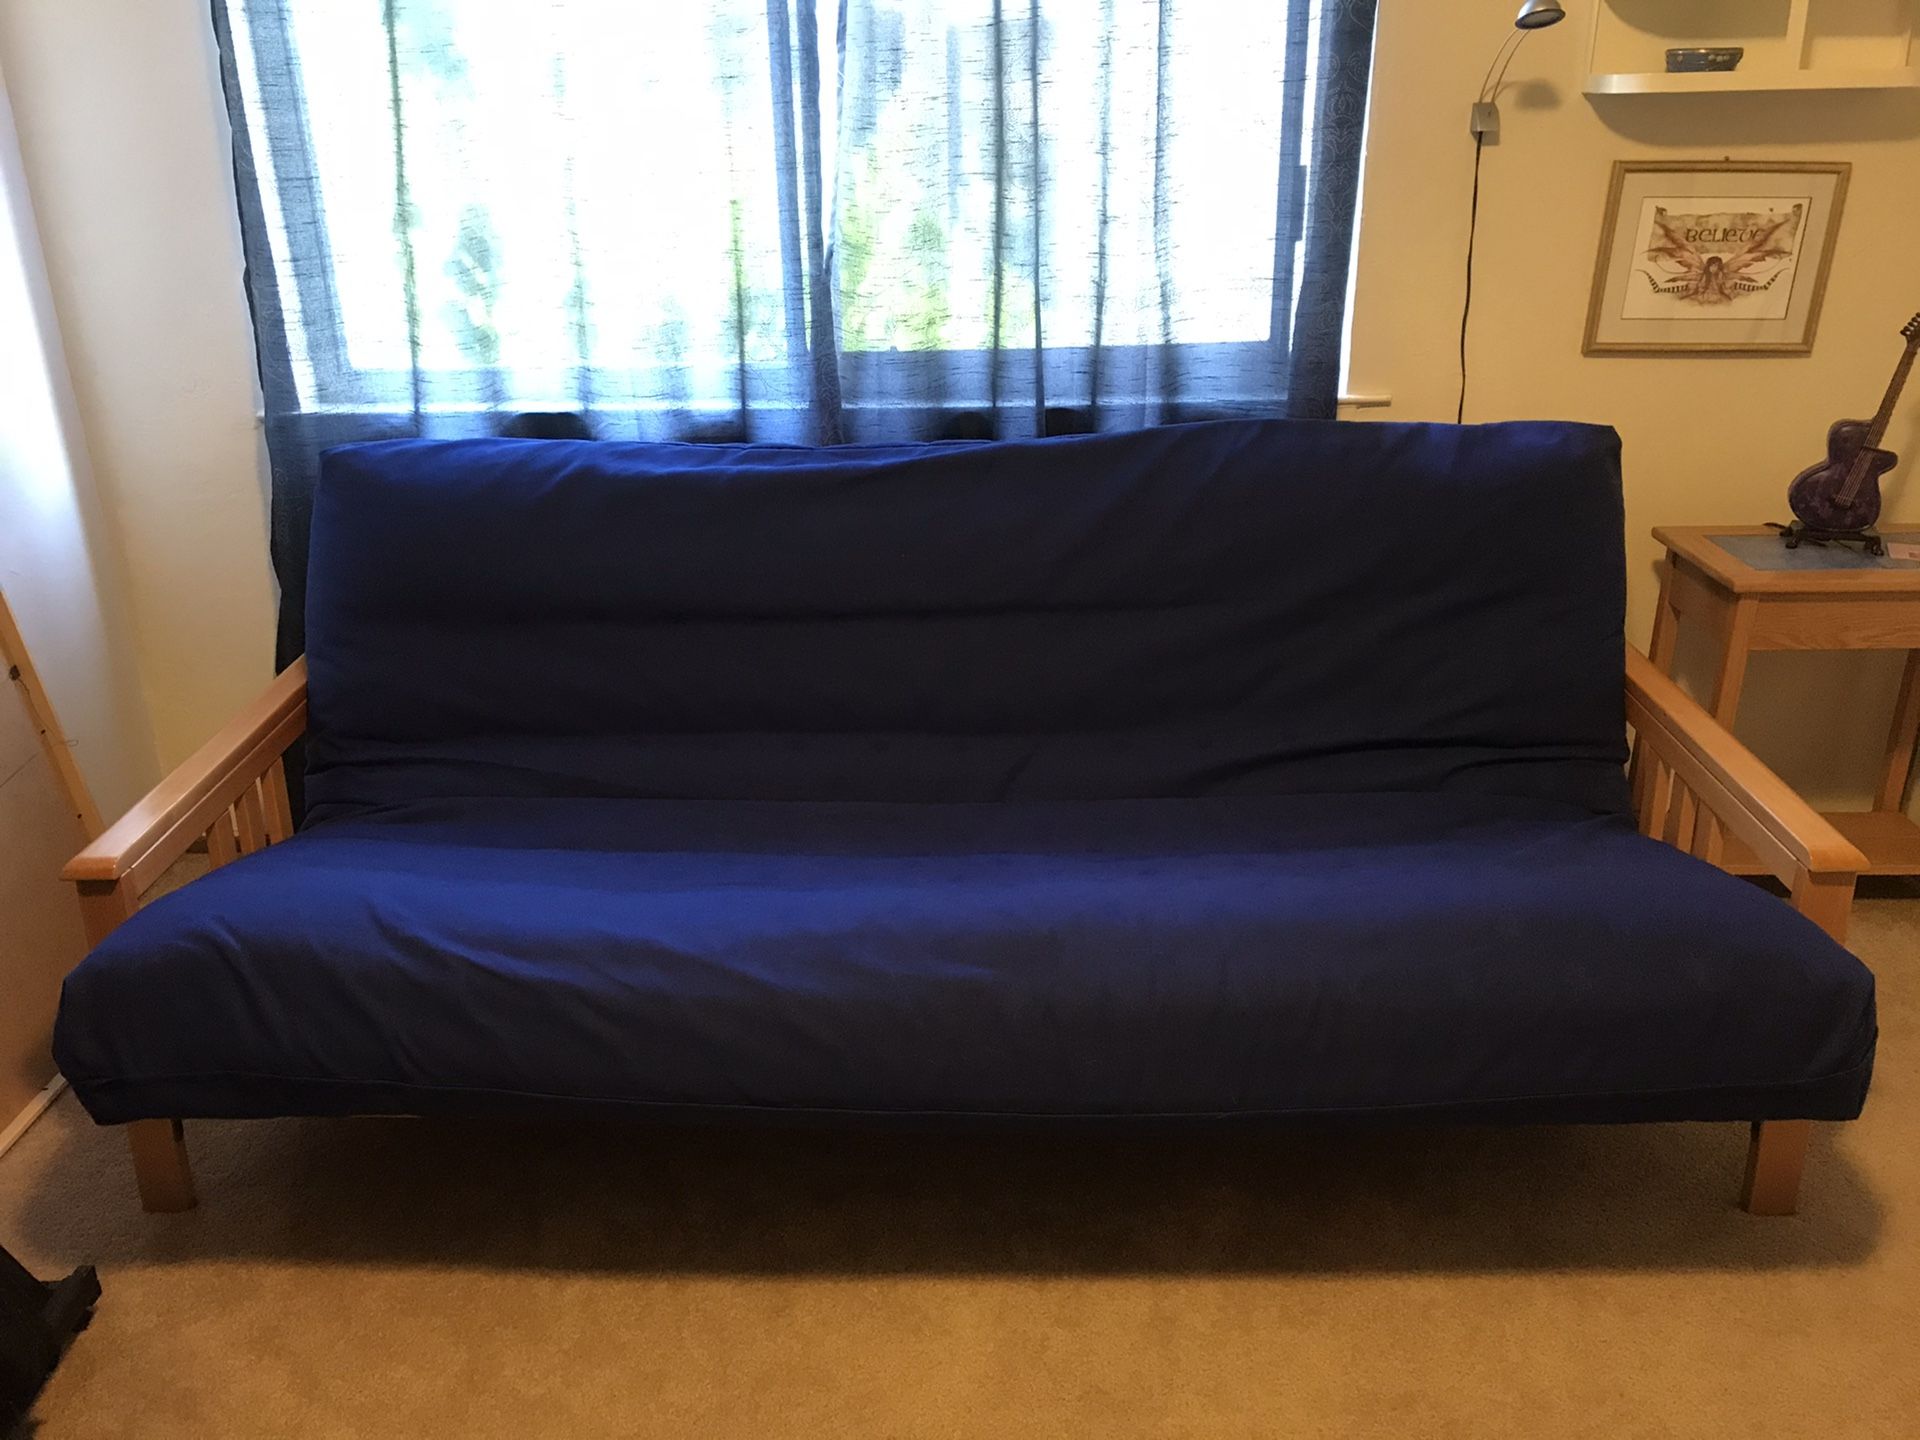 Queen-size futon